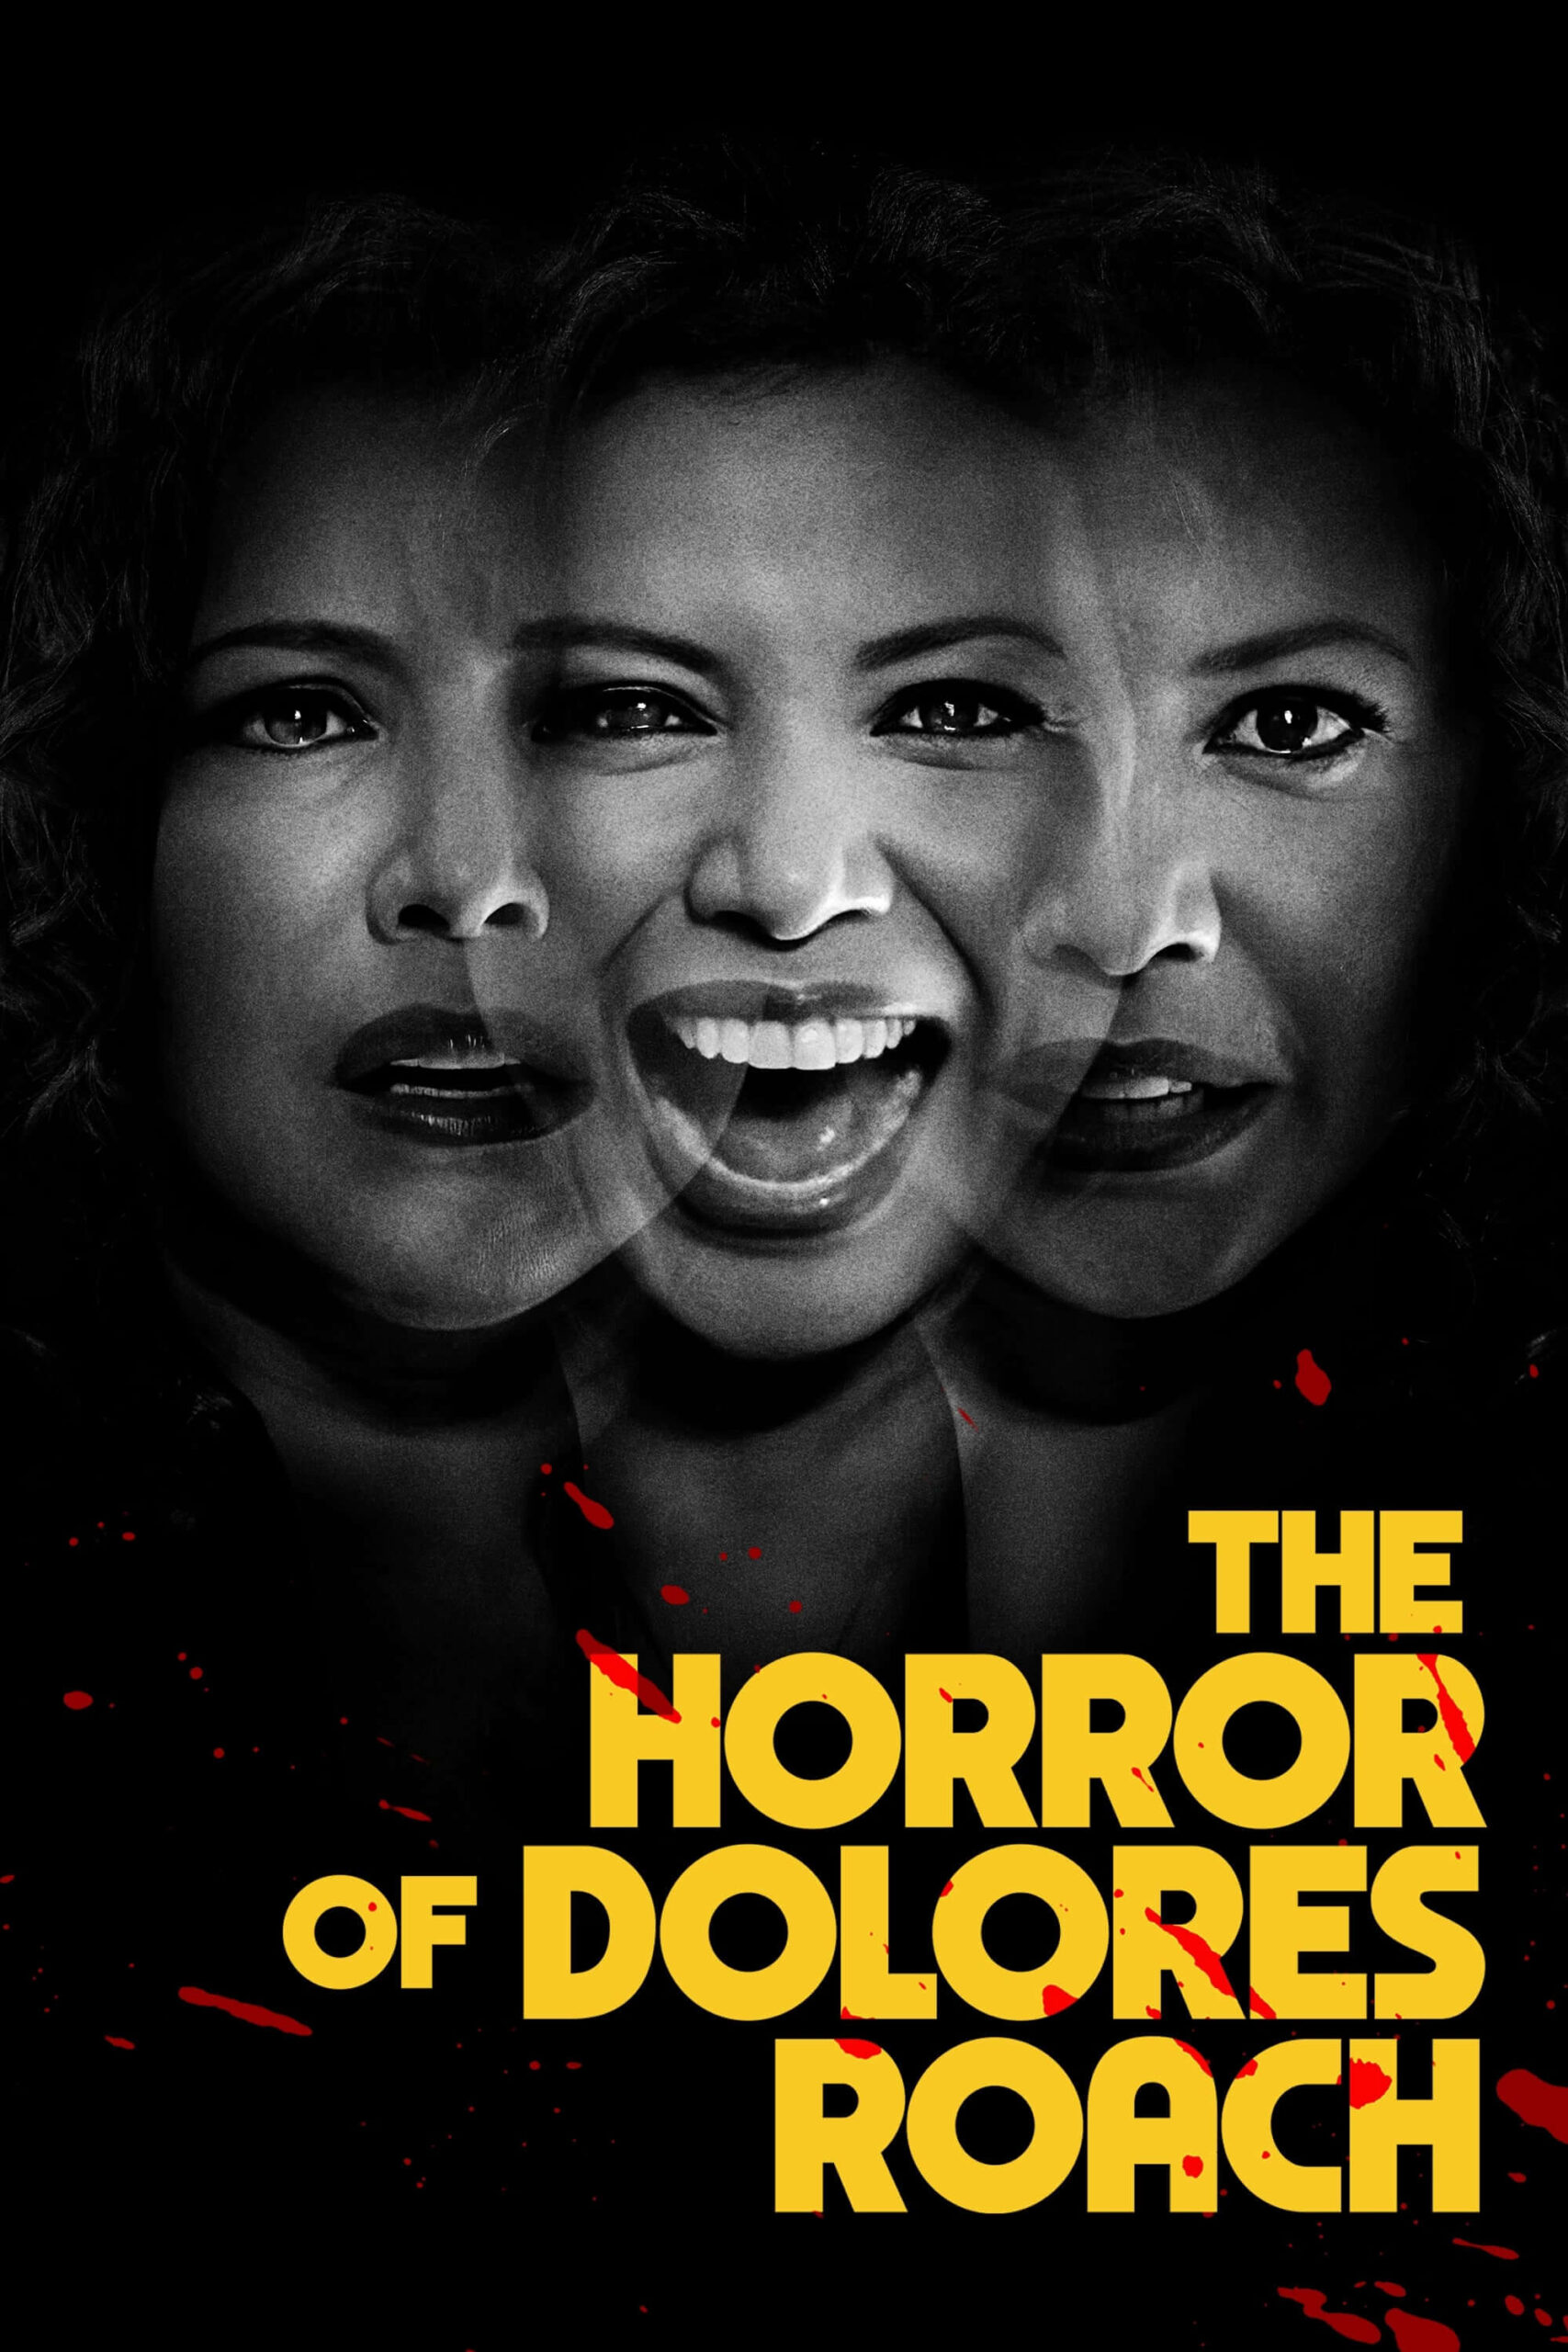 وحشت دولورس روچ (The Horror of Dolores Roach)